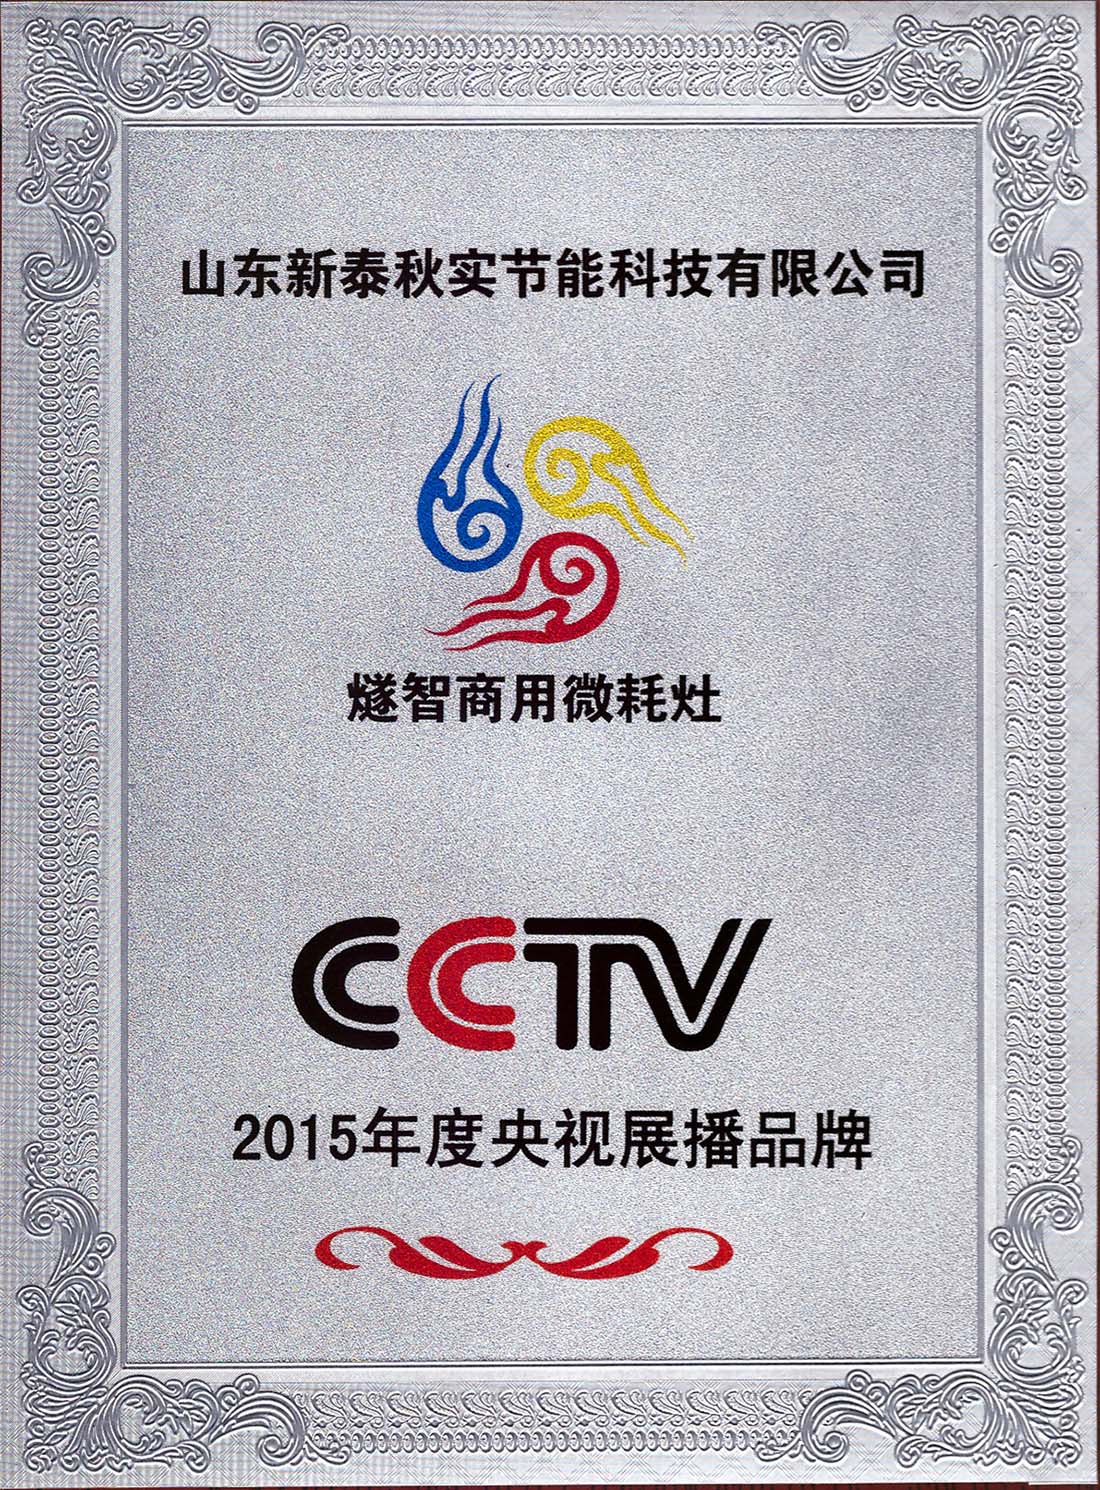 CCTV央视展播品牌 （牌匾）